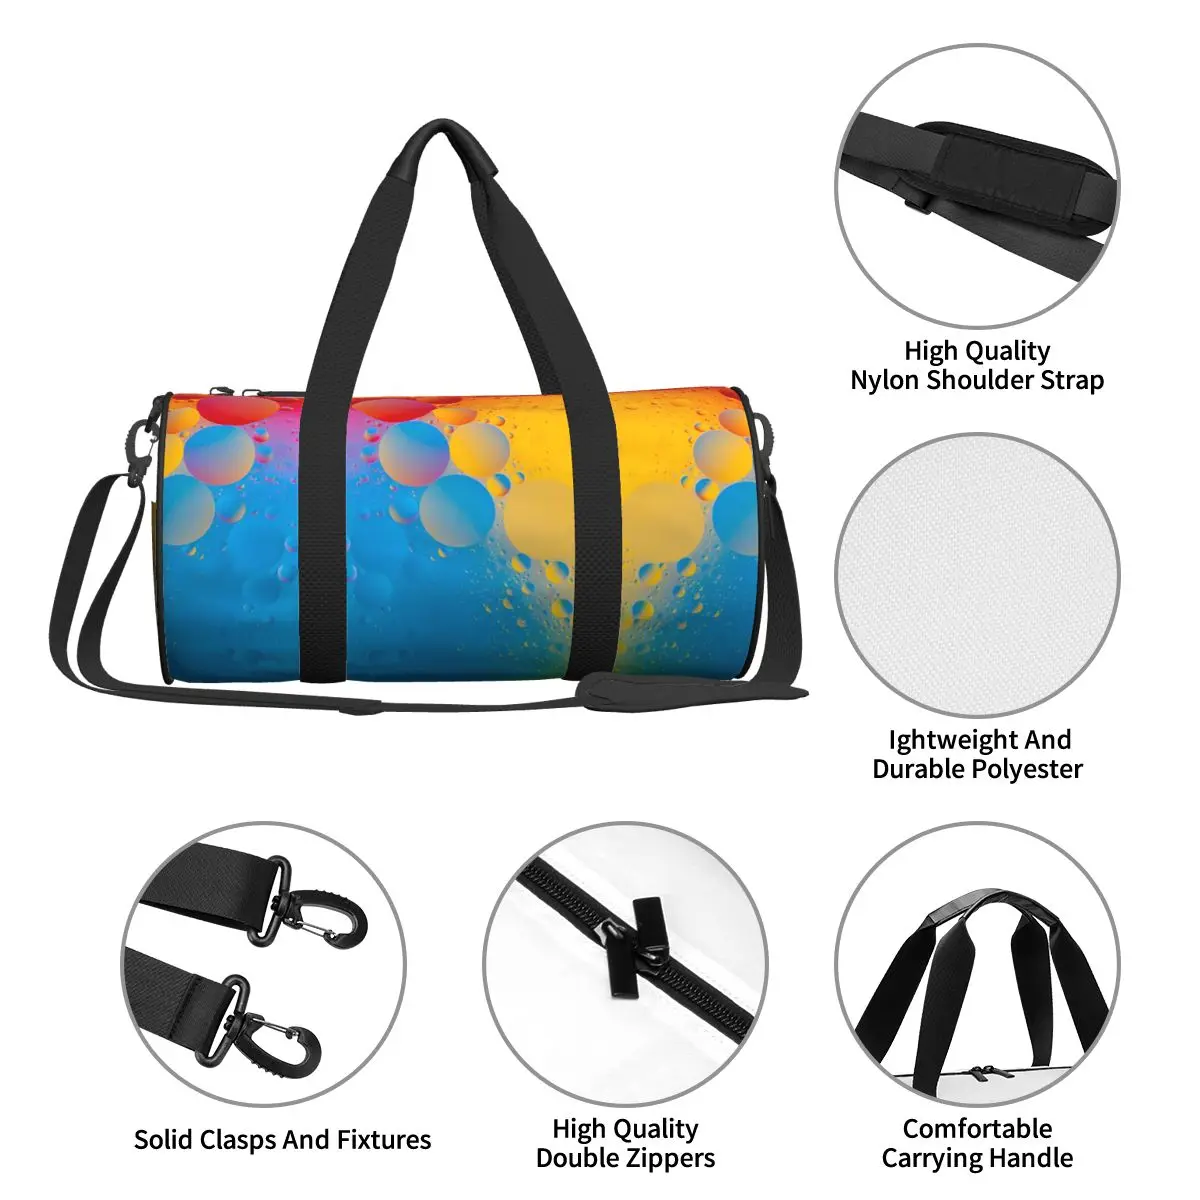 Красочные пузыри 4К Спортивные сумки красочные граффити багаж спортивная сумка с обувью забавные сумки пару дизайн водонепроницаемый фитнес-сумка